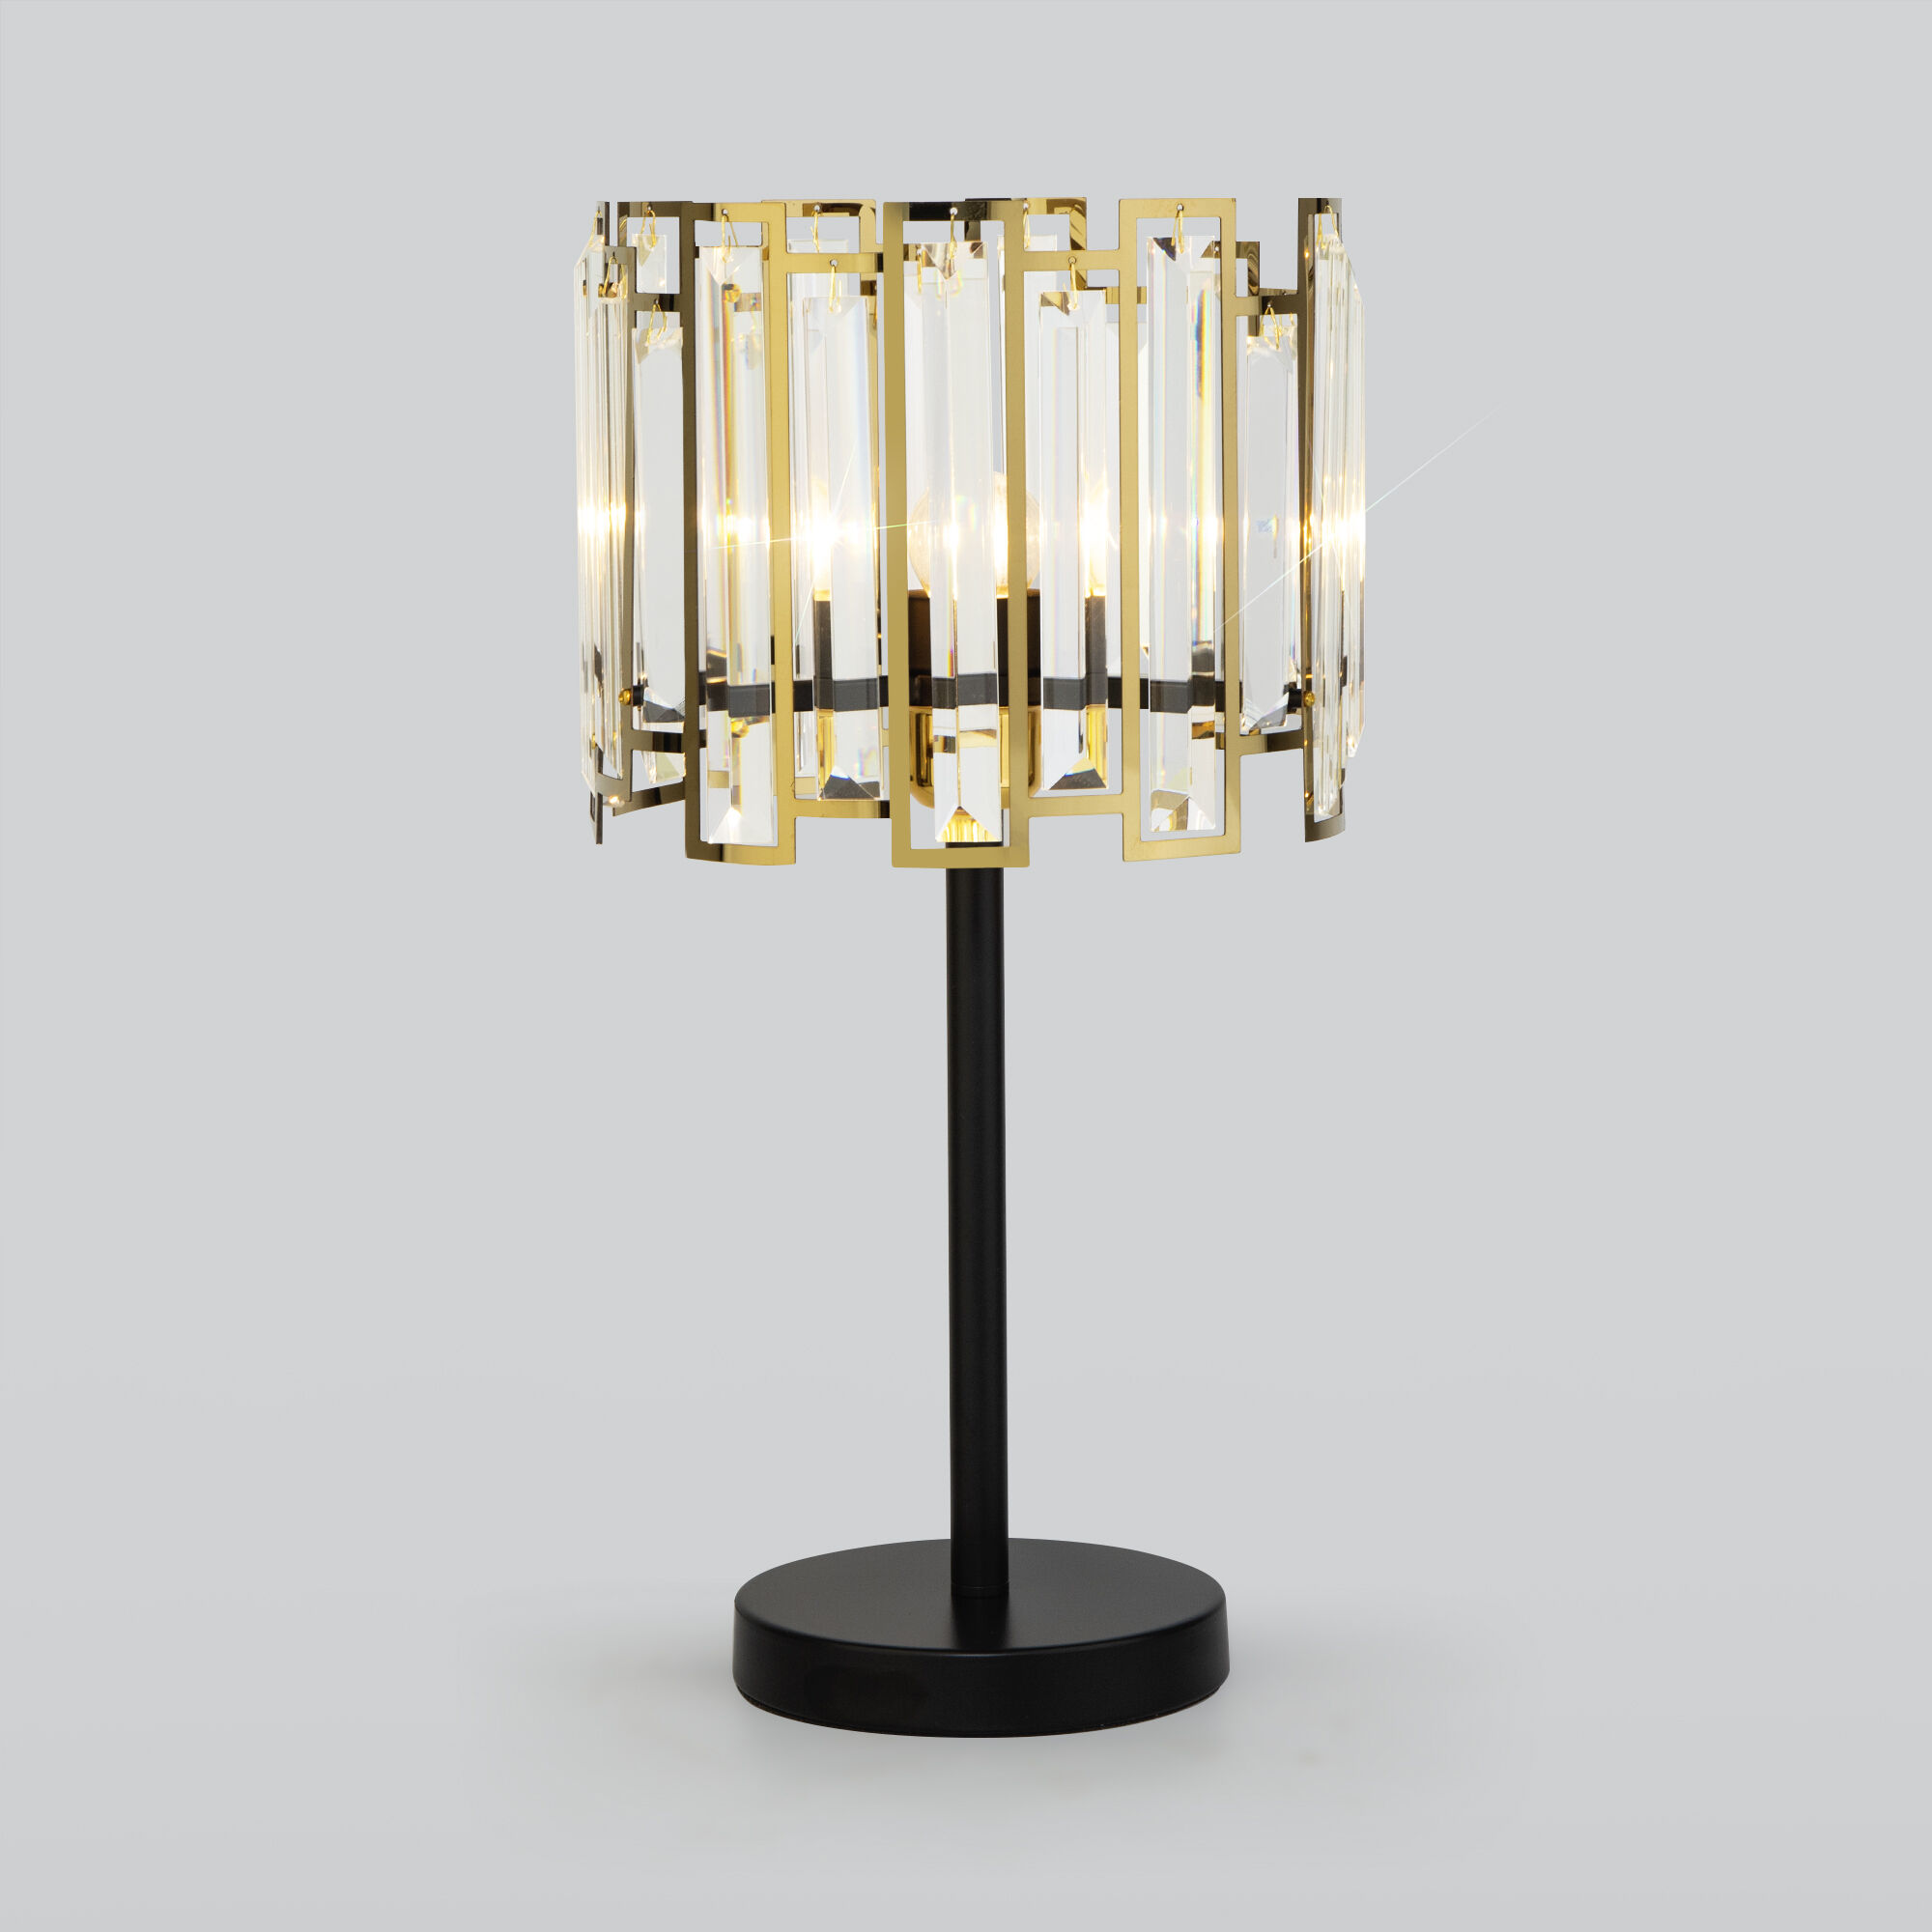 Настольный светильник с хрусталем Bogate's Cella 01148/1 черный/золото. Фото 1